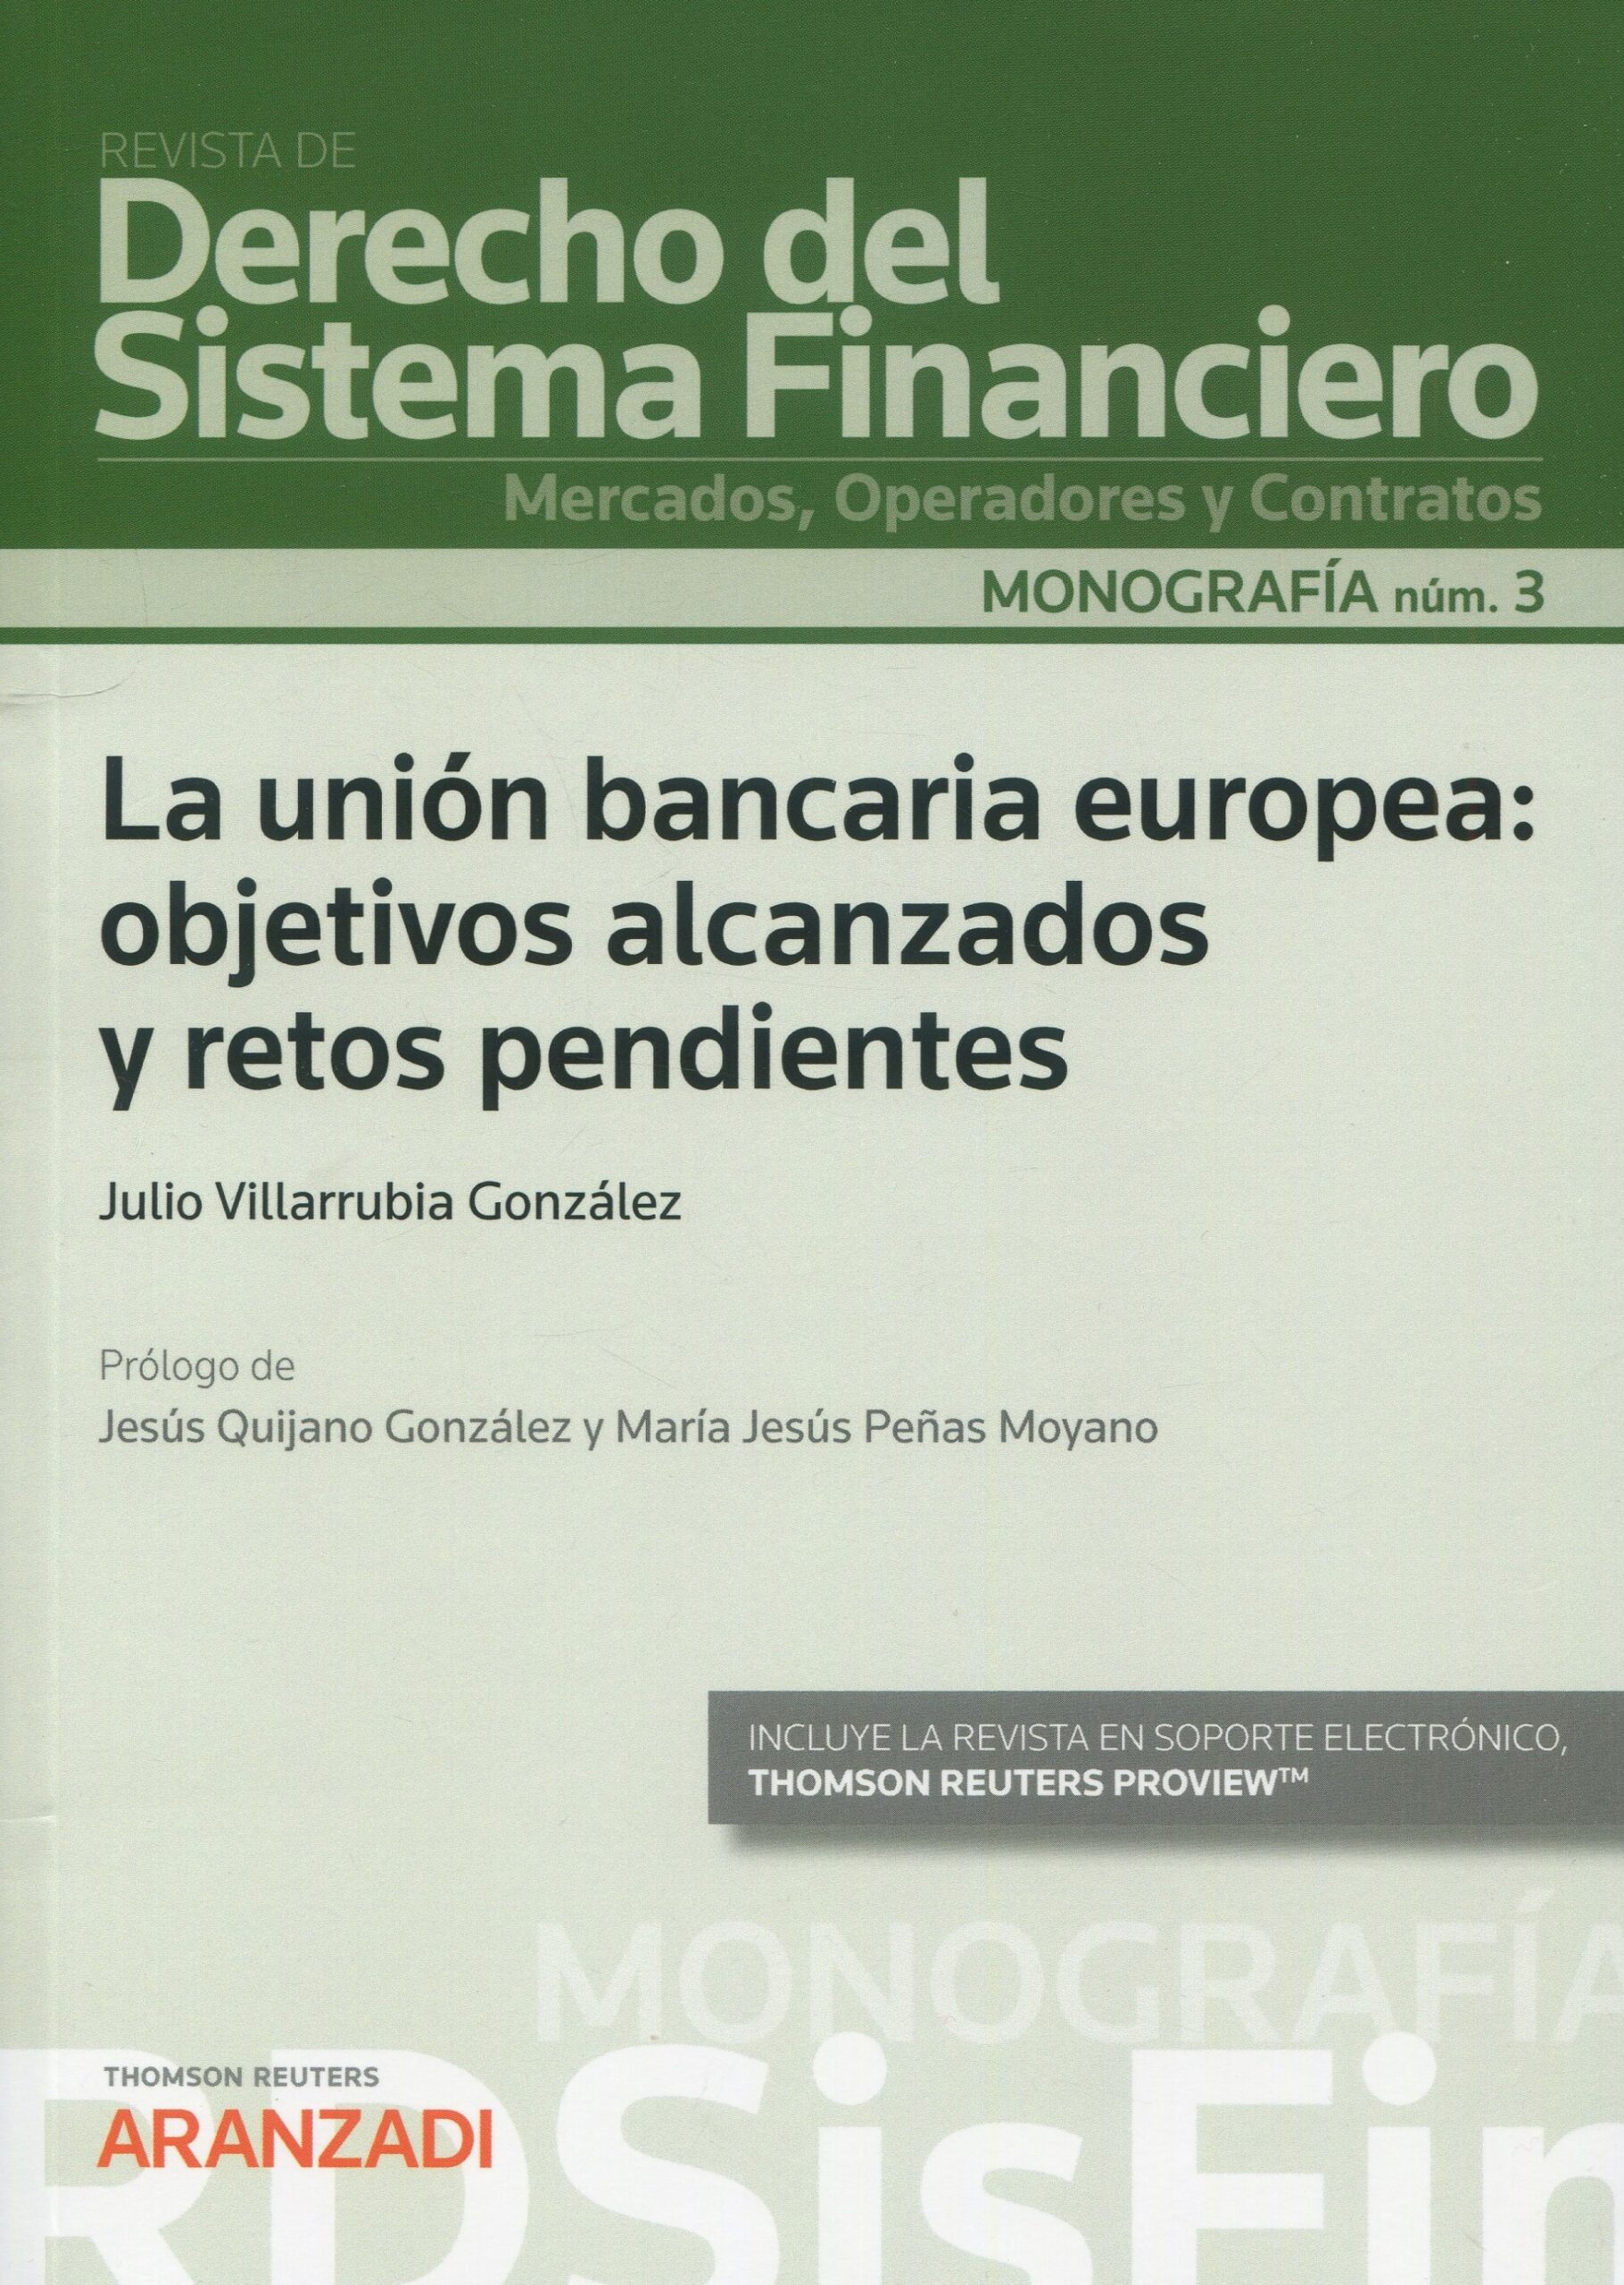 La unión bancaria europea